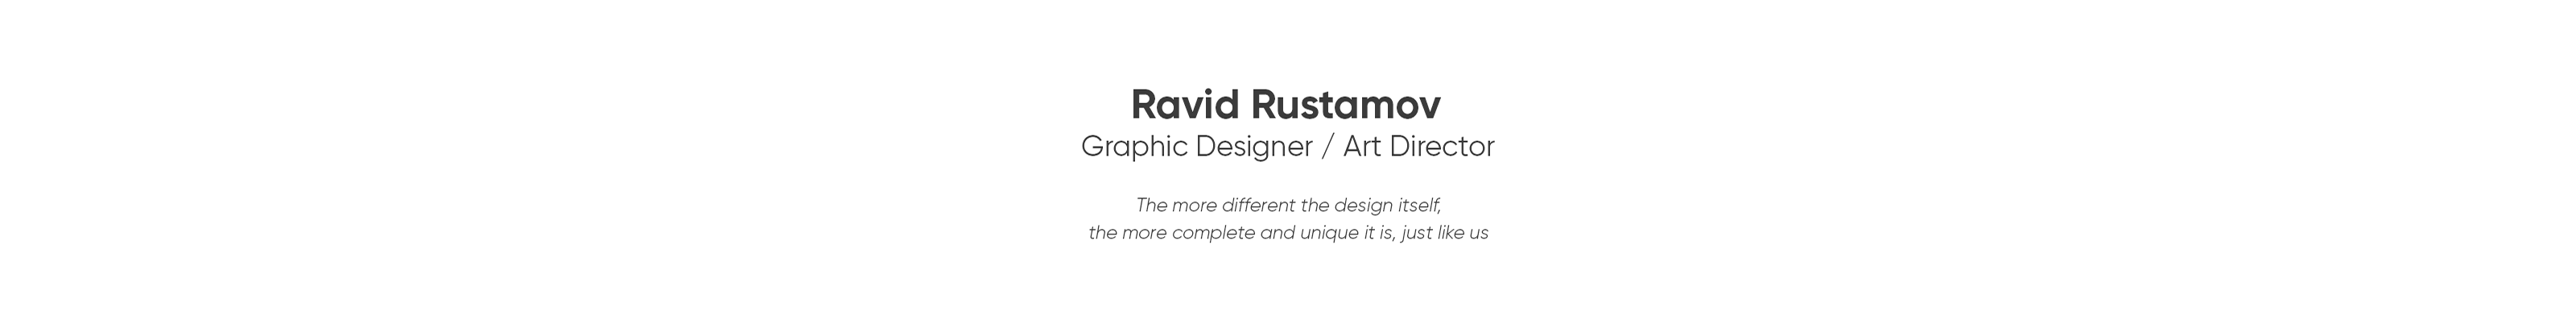 Ravid Rustamov profil başlığı